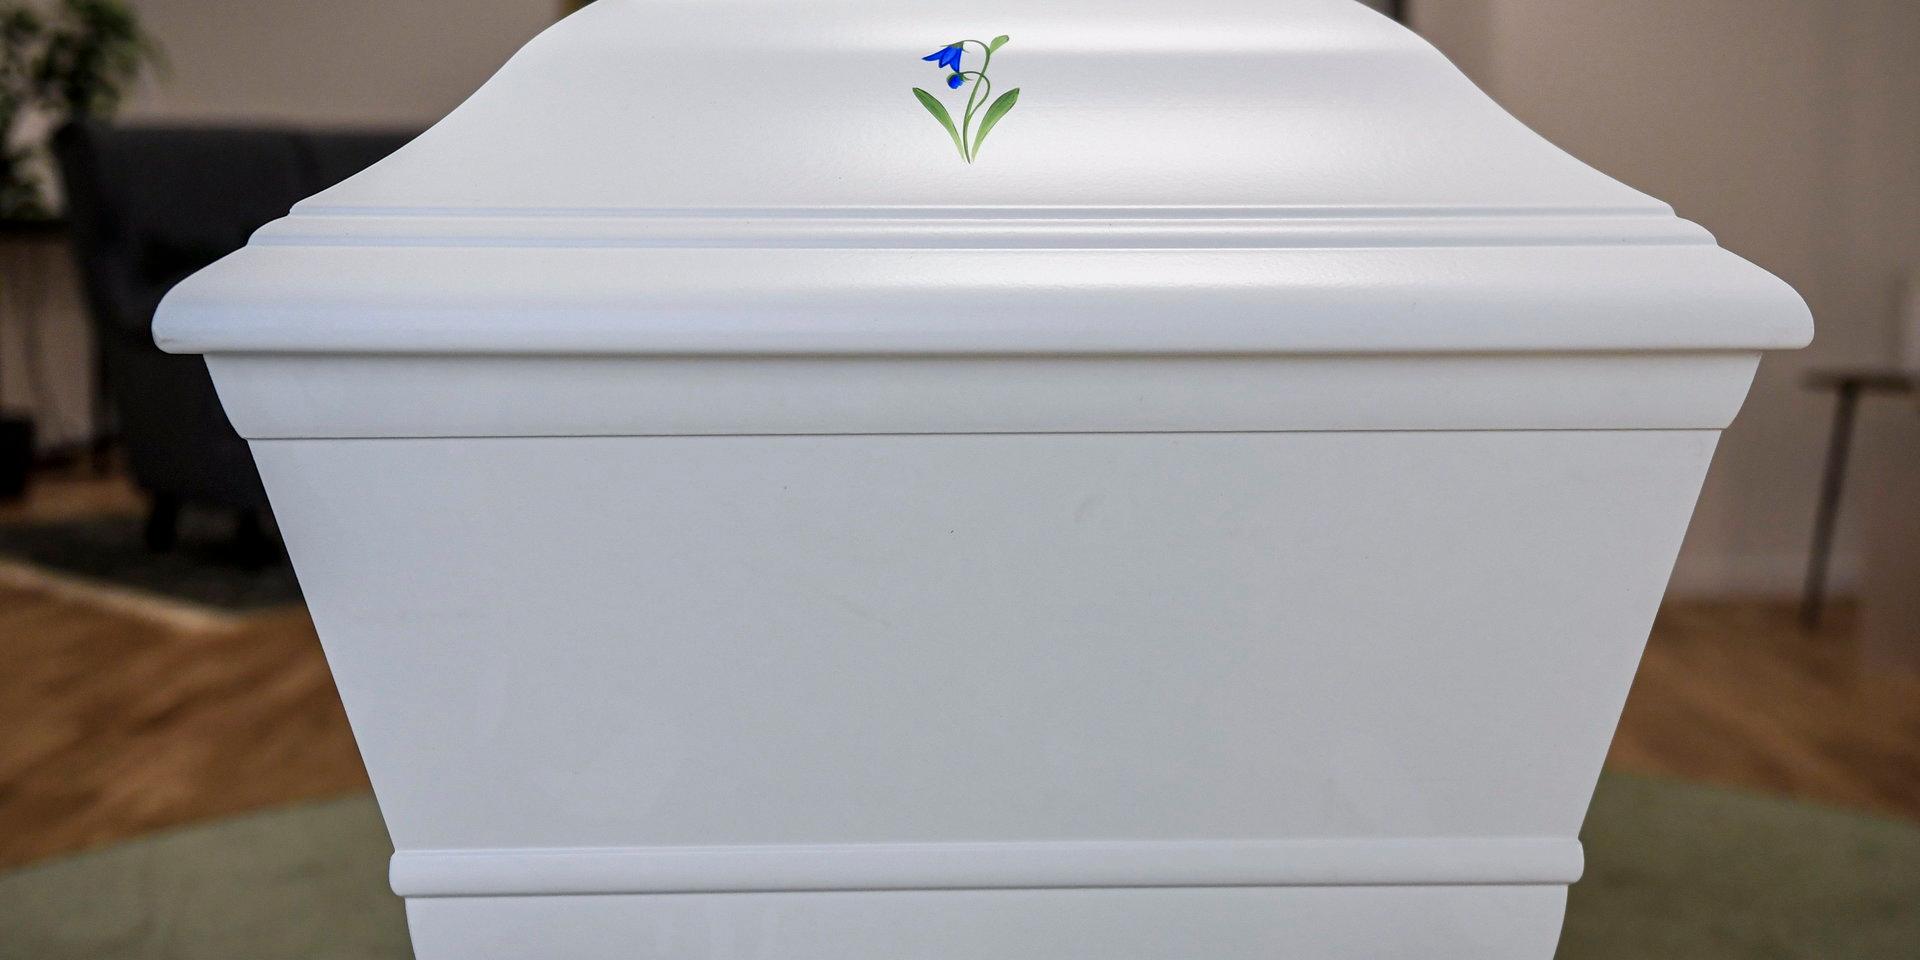 Lagstiftningen som infördes 2012 har inte kortat tiden mellan död och begravning. Arkivbild.